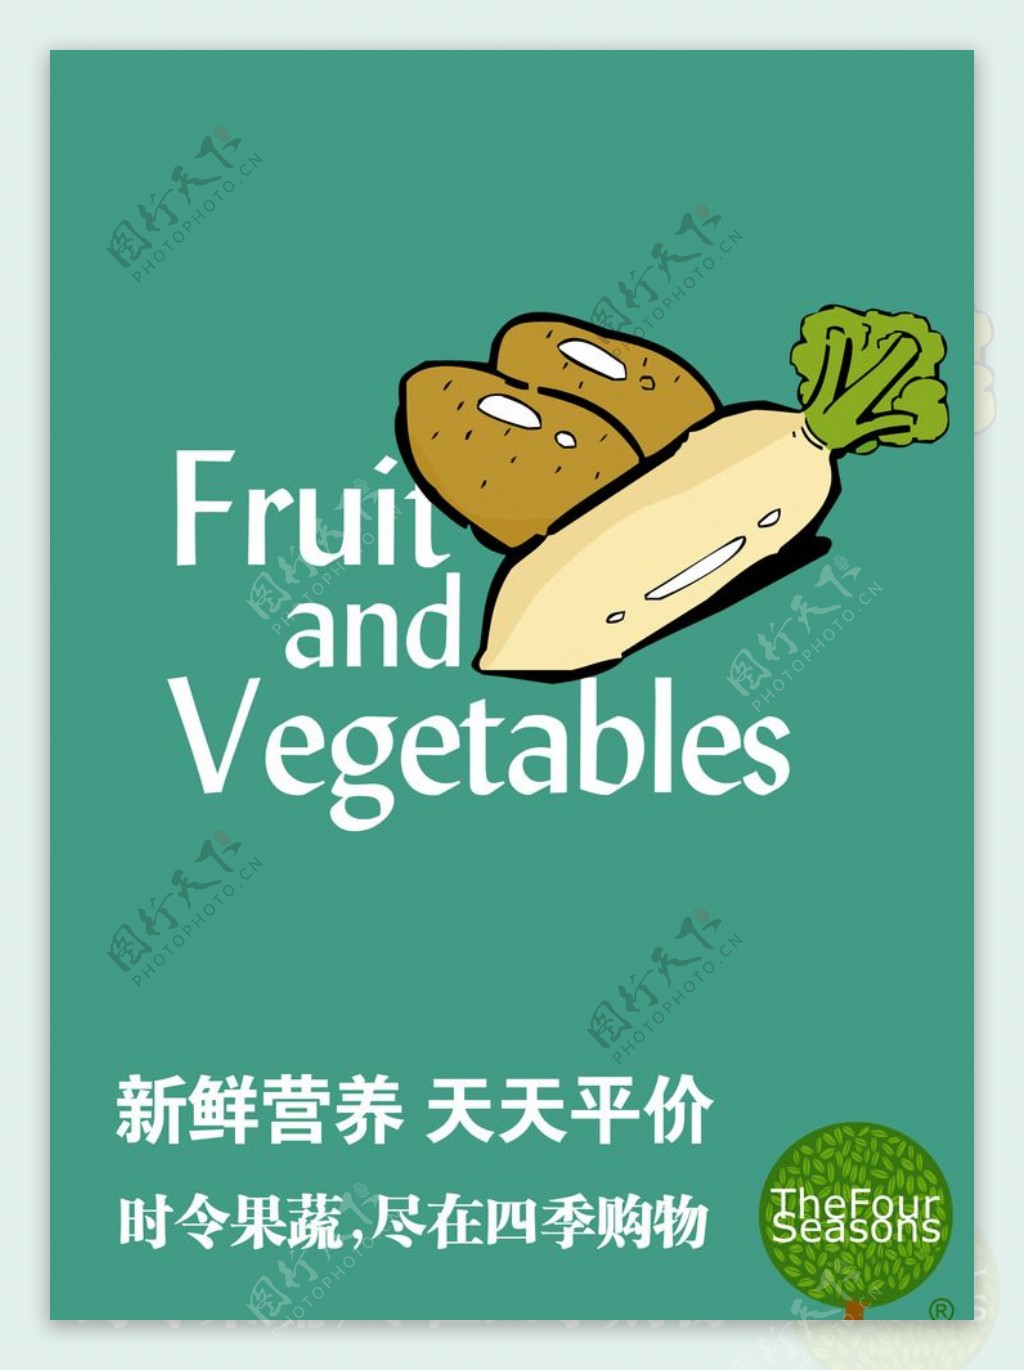 新鲜营养天天平价时蔬菜海报